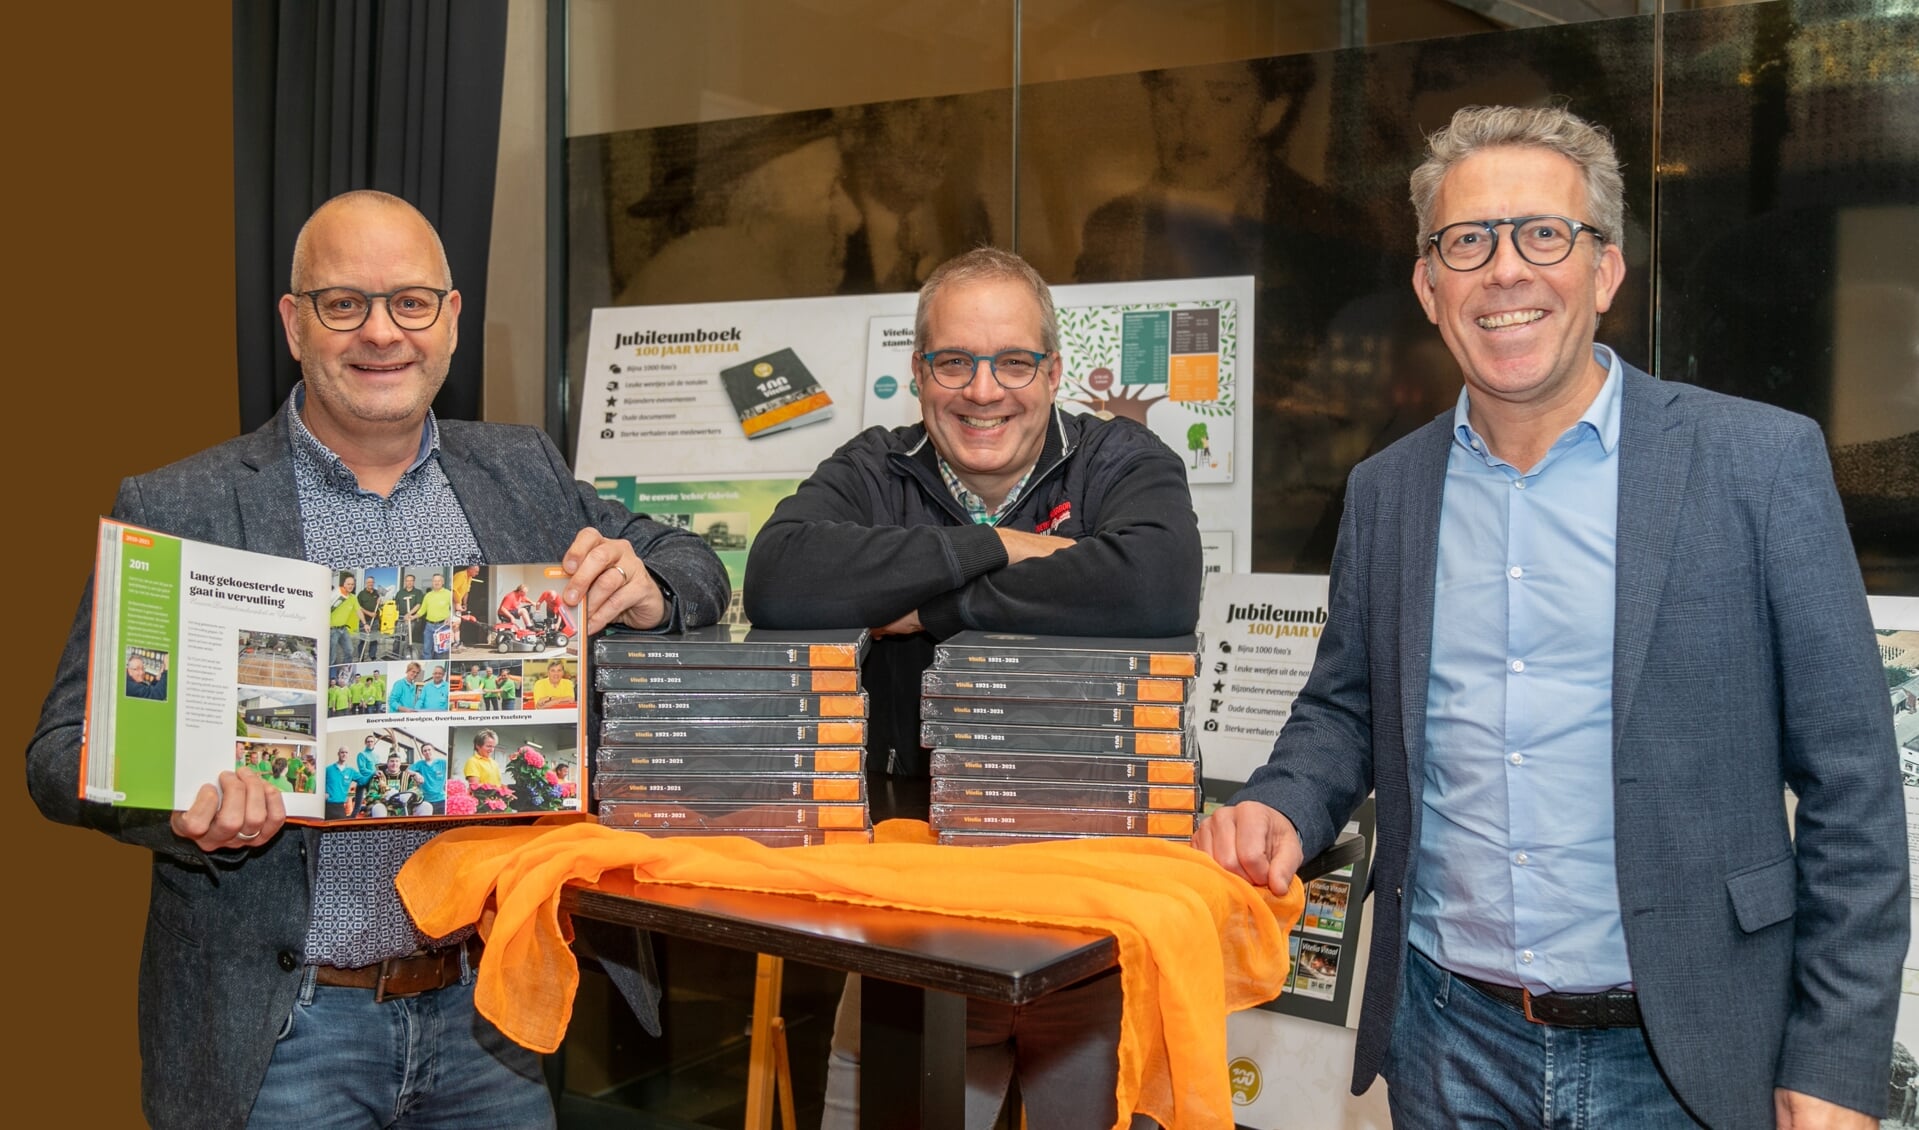 Voorzitter Edwin Michiels (midden), Stefan Kuijpers (links) en Herman Rutten (rechts) tonen vol trots het jubileumboek.